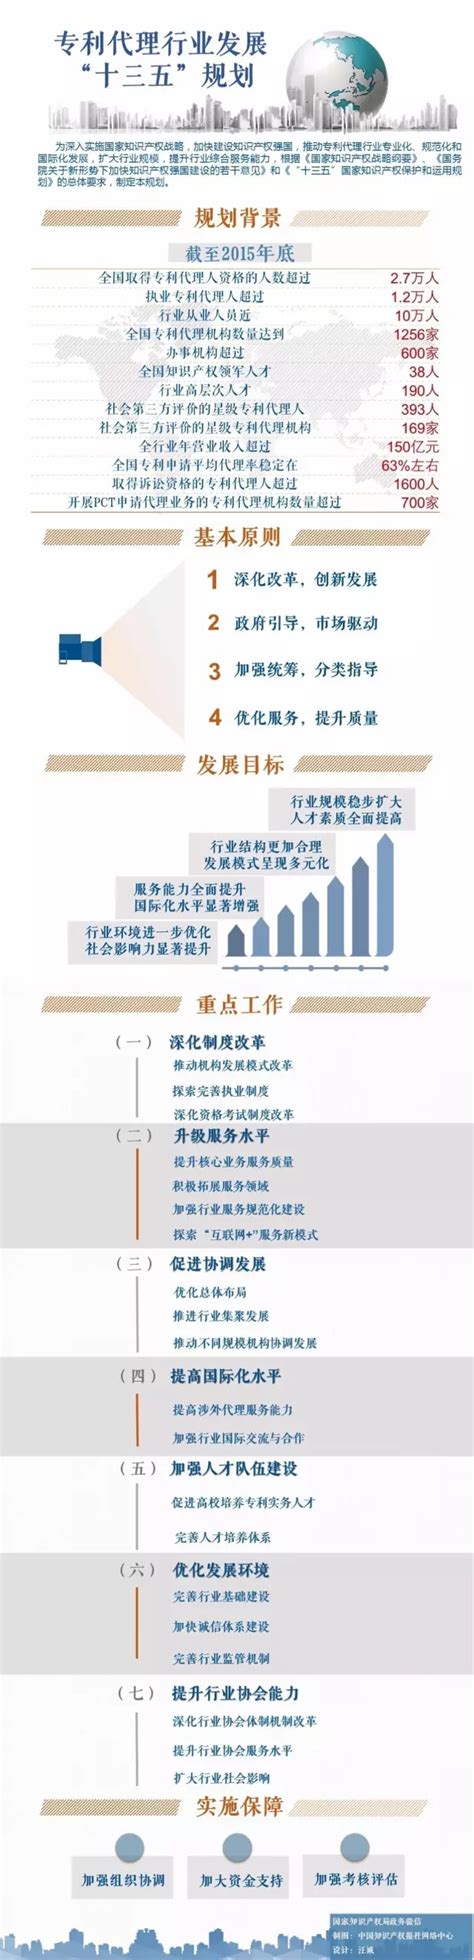 《专利代理行业发展“十三五”规划》解读-中国企业知识产权网